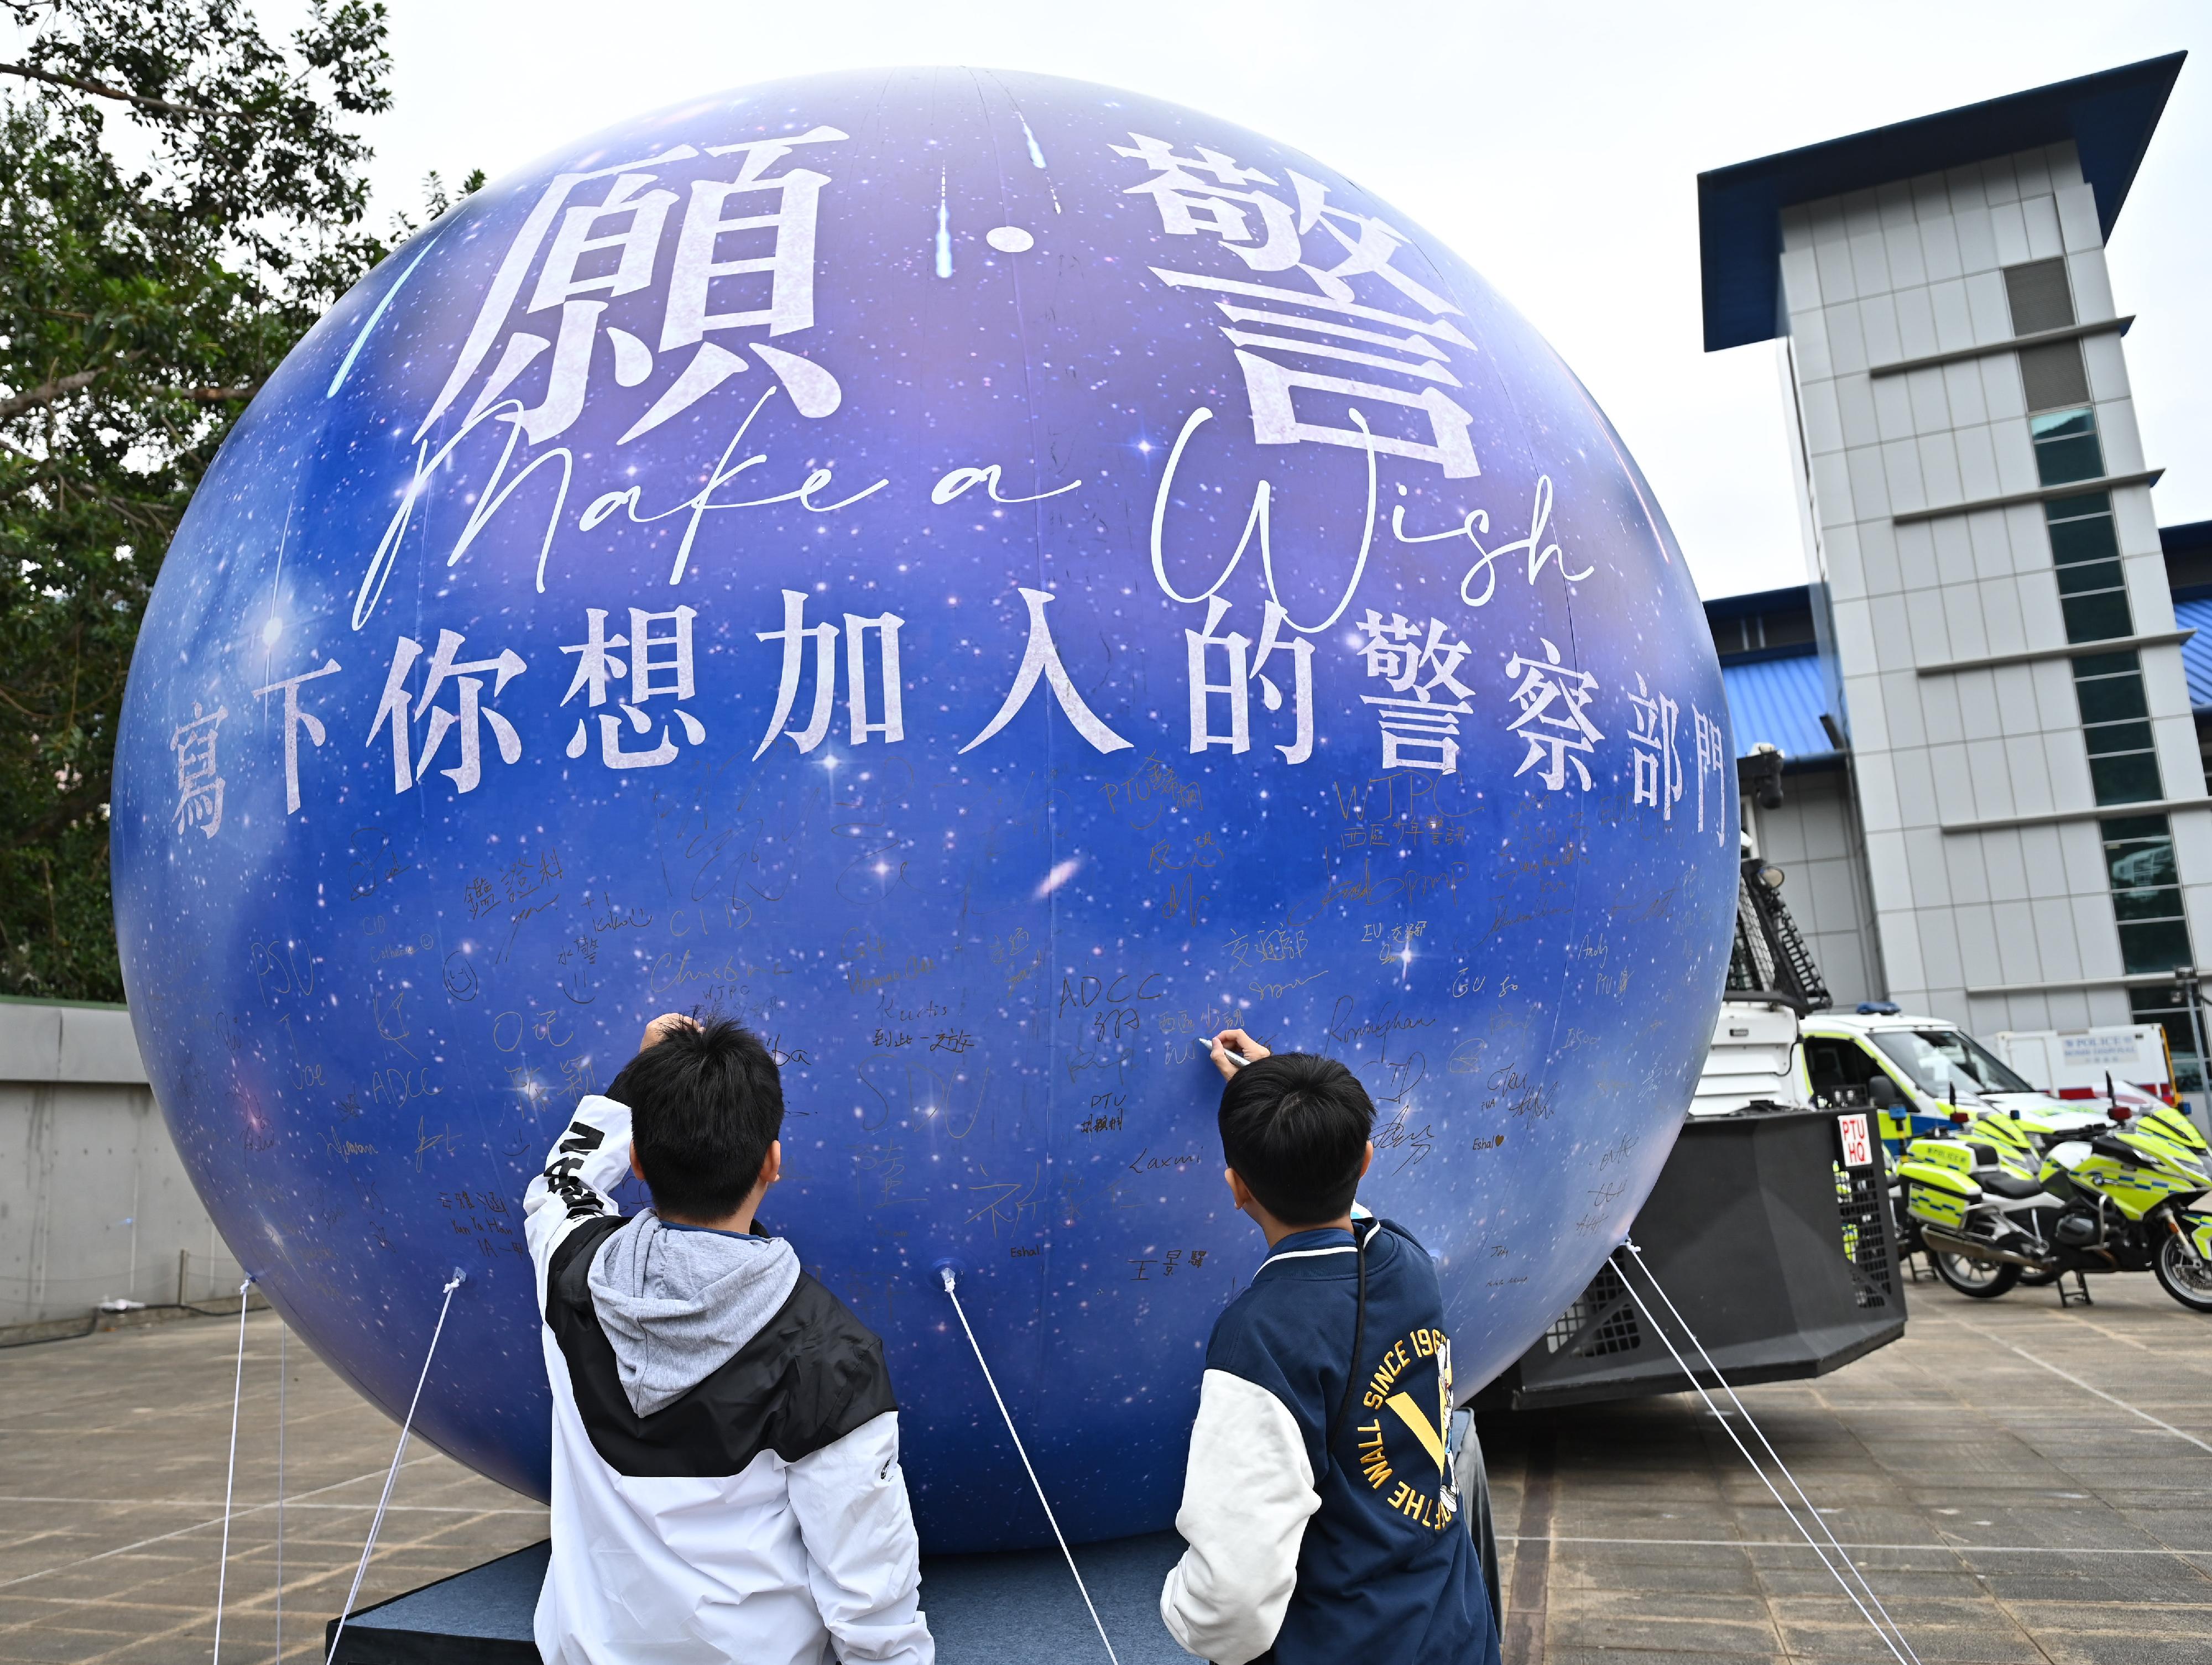 參加者於會場的巨型許願氣球寫下希望加入的警隊部門。